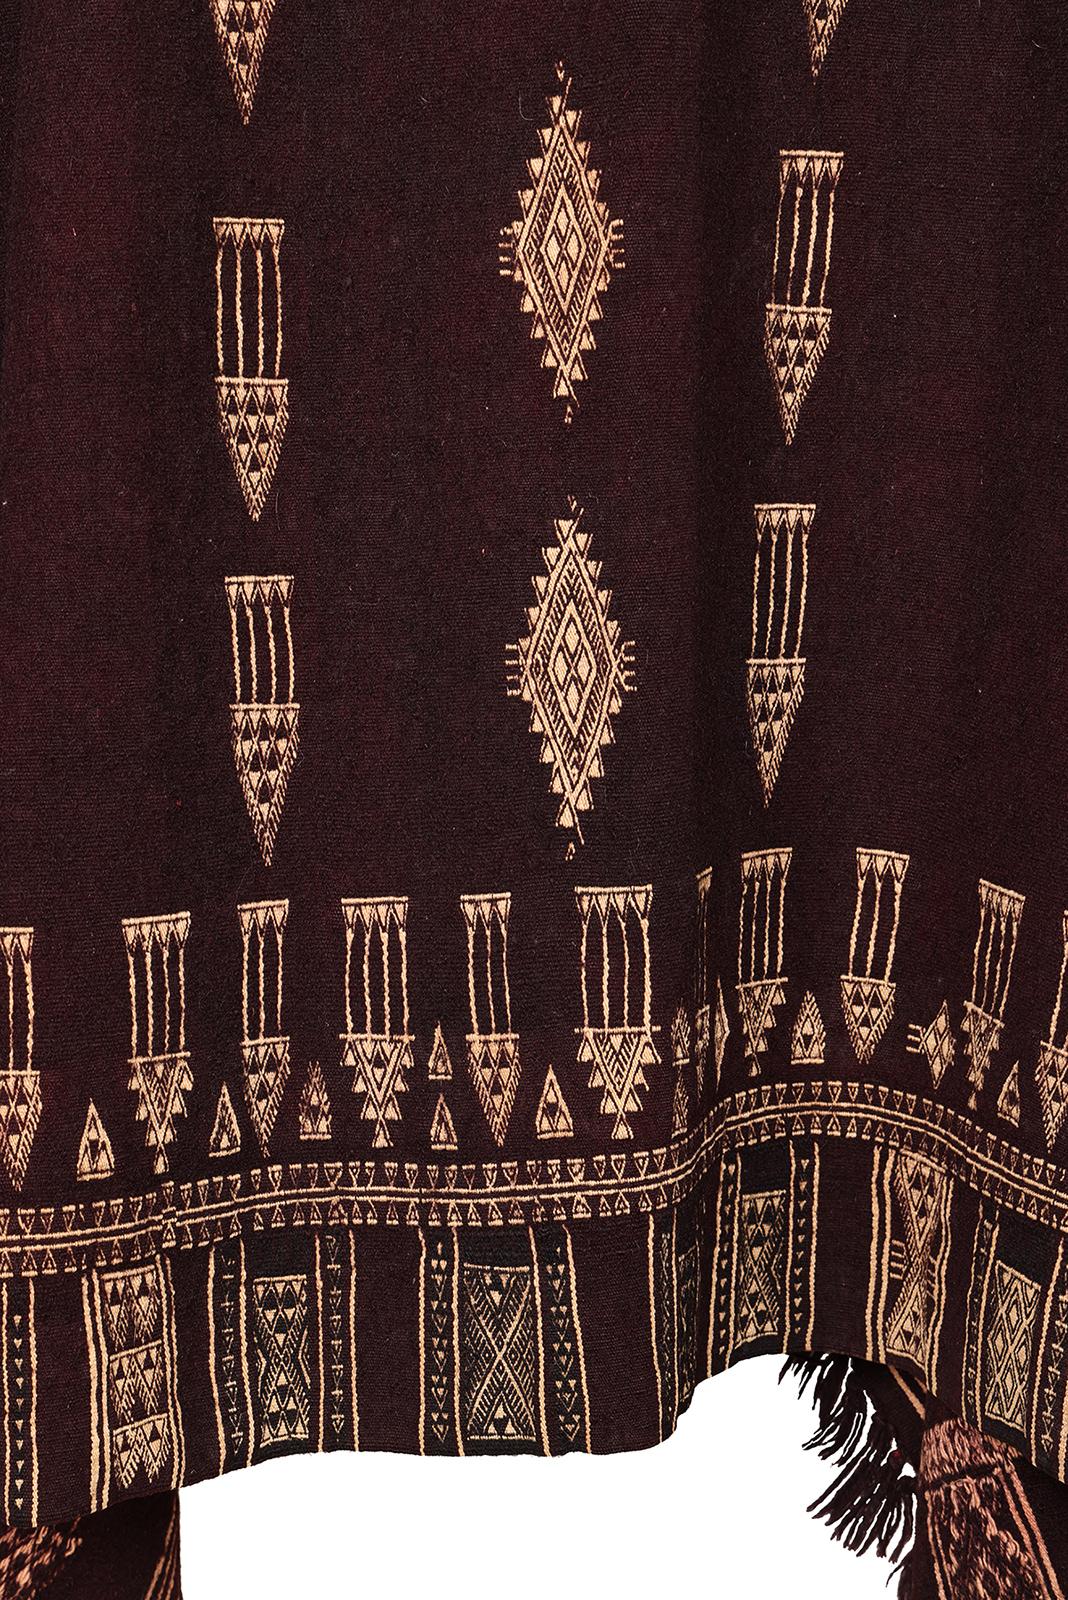 Couverture pour femme, Bakhnouk
Peuple berbère, Tunisie
Début du 20e siècle
Laine, coton, teintés après le tissage
Motifs supplémentaires
45